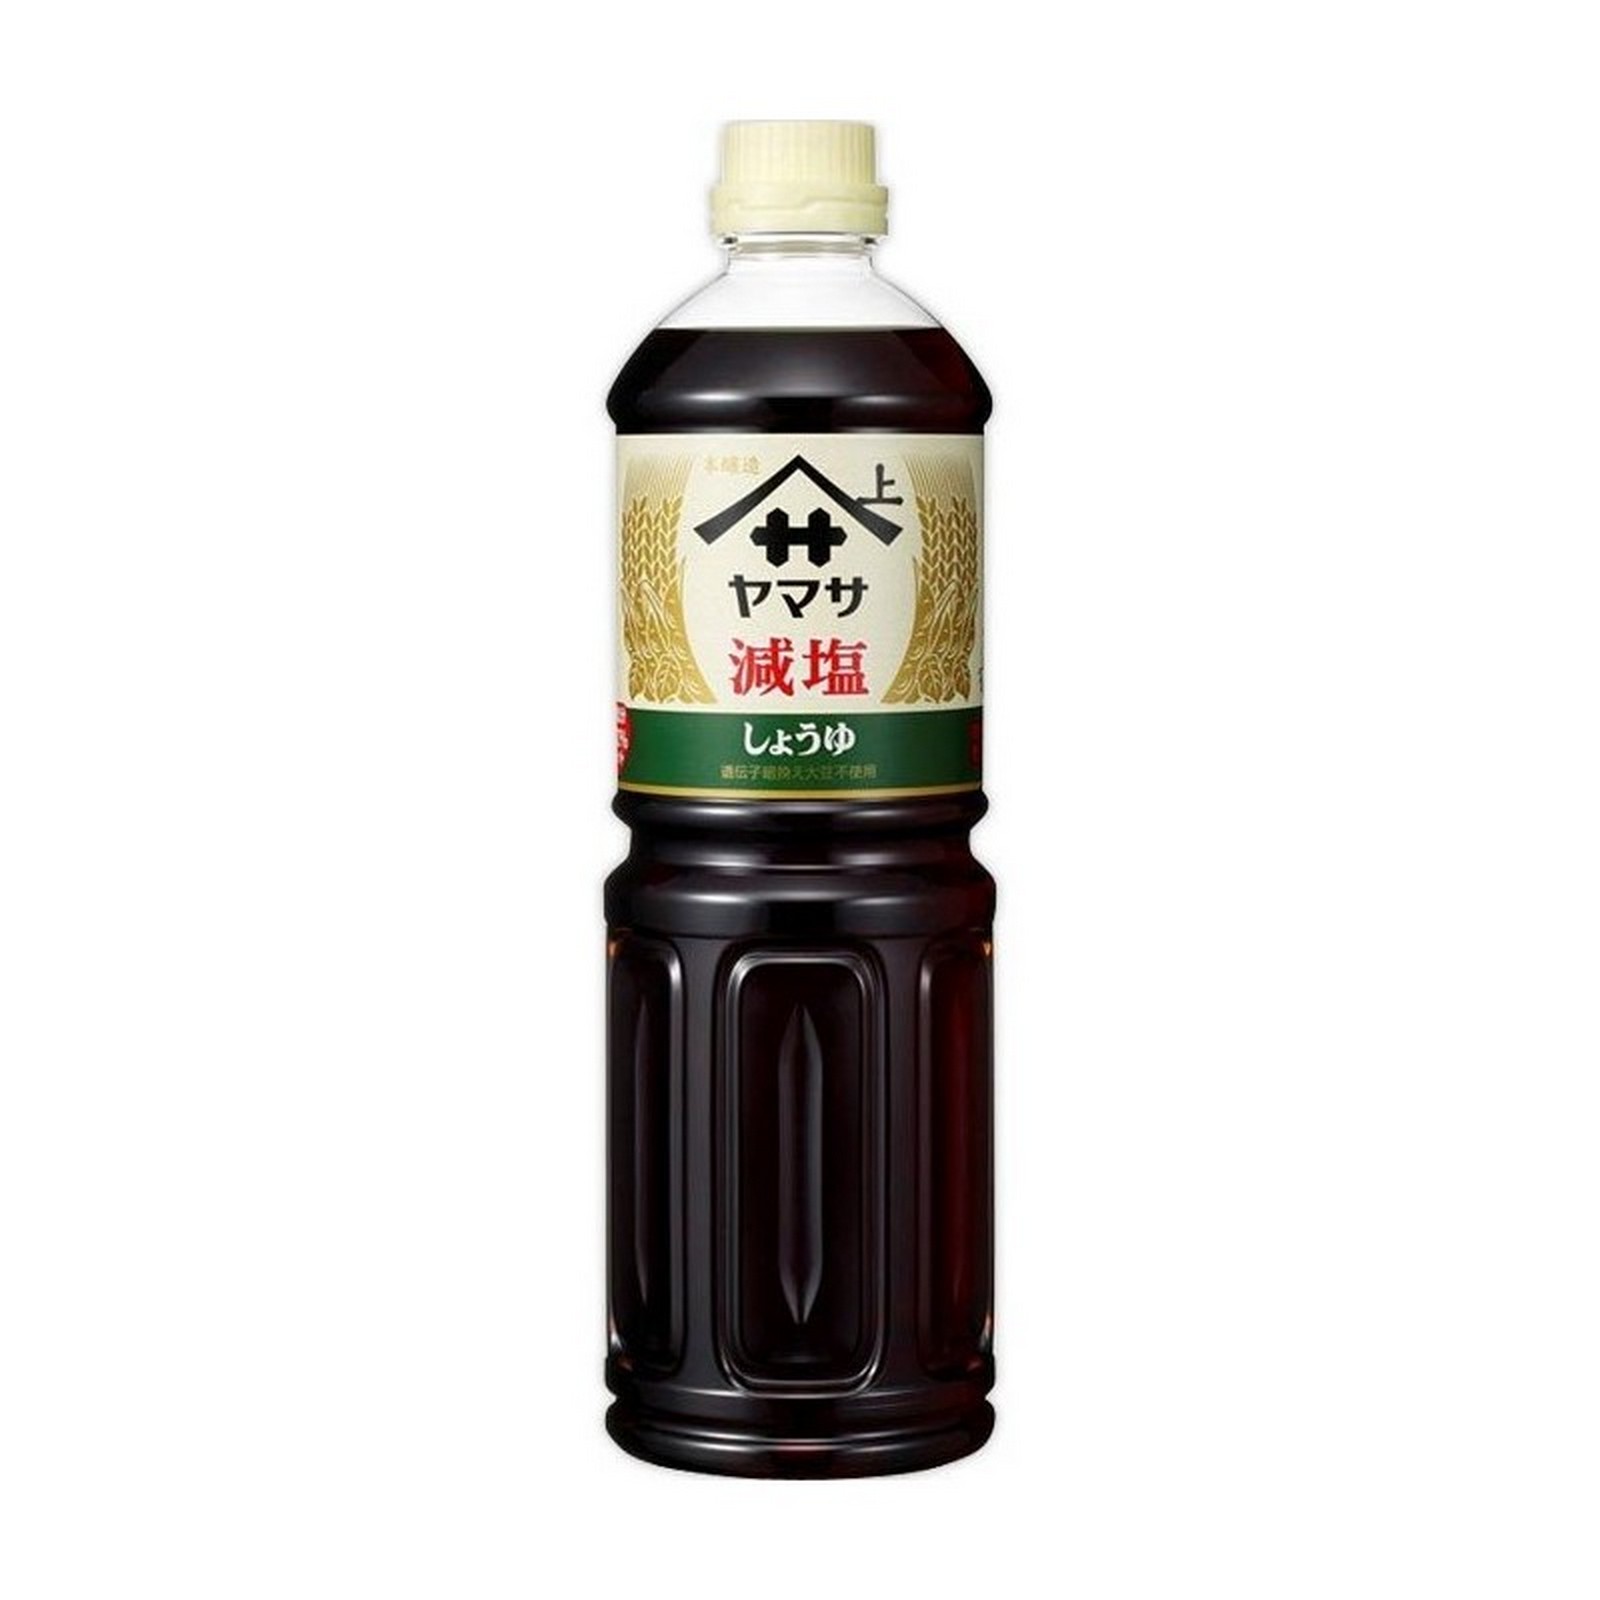 Yamasa Low Sodium soy sauce 1L